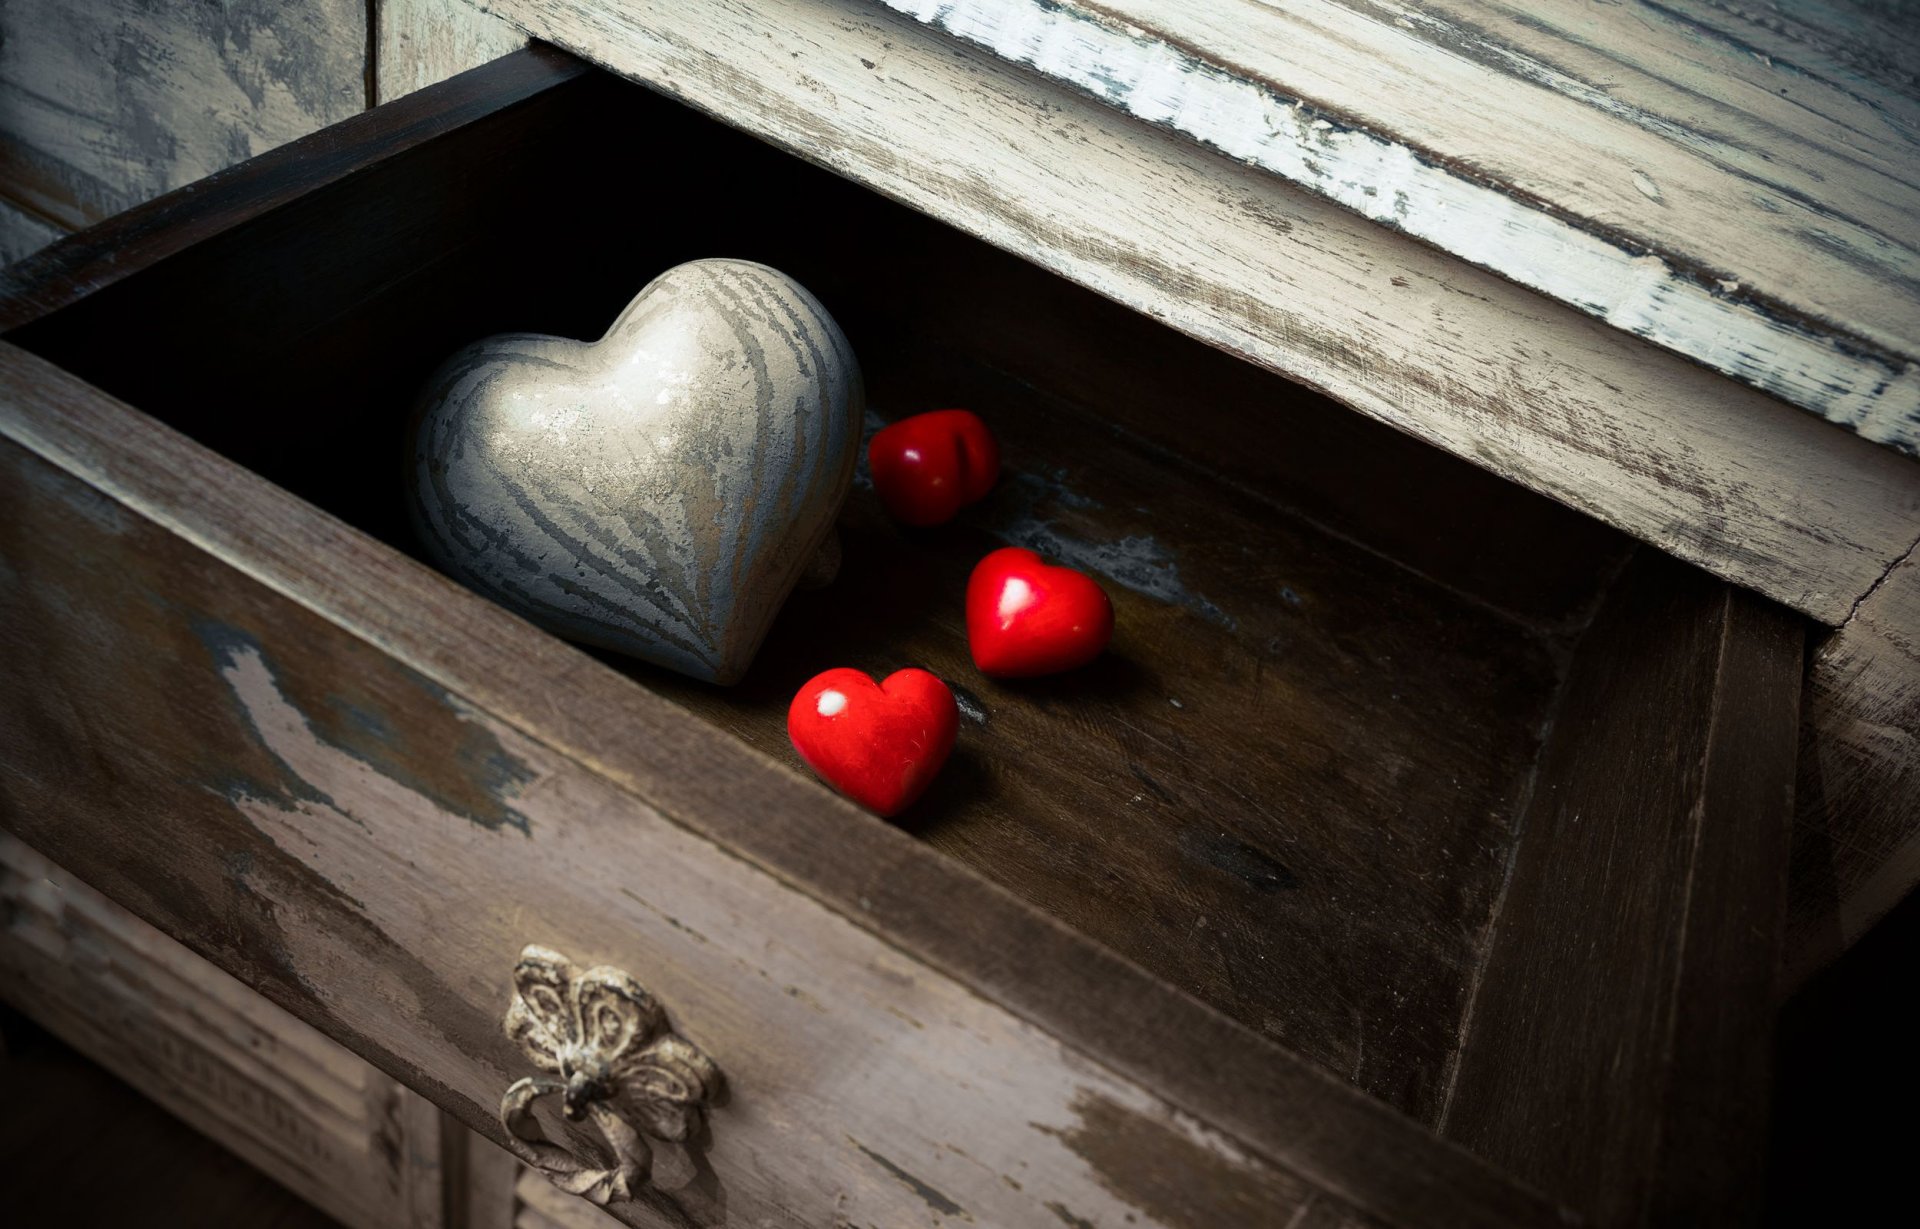 amore sfondo hd full size,rosso,fotografia di still life,legna,cuore,mobilia